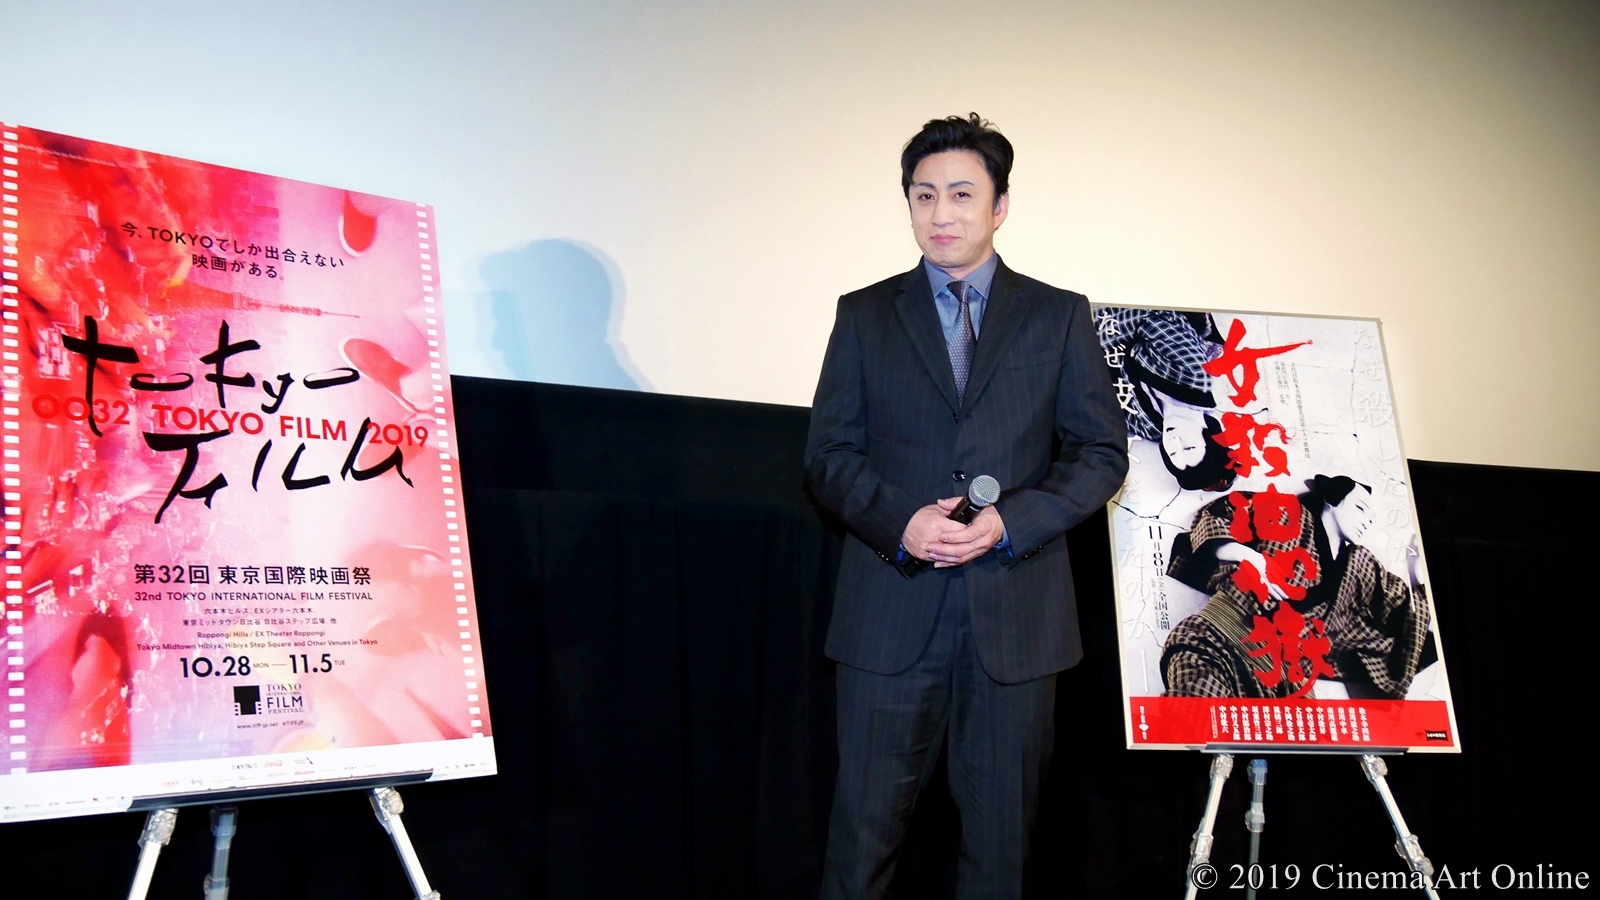 【写真】第32回 東京国際映画祭(TIFF) 特別上映 シネマ歌舞伎『女殺油地獄』舞台挨拶 (松本幸四郎)